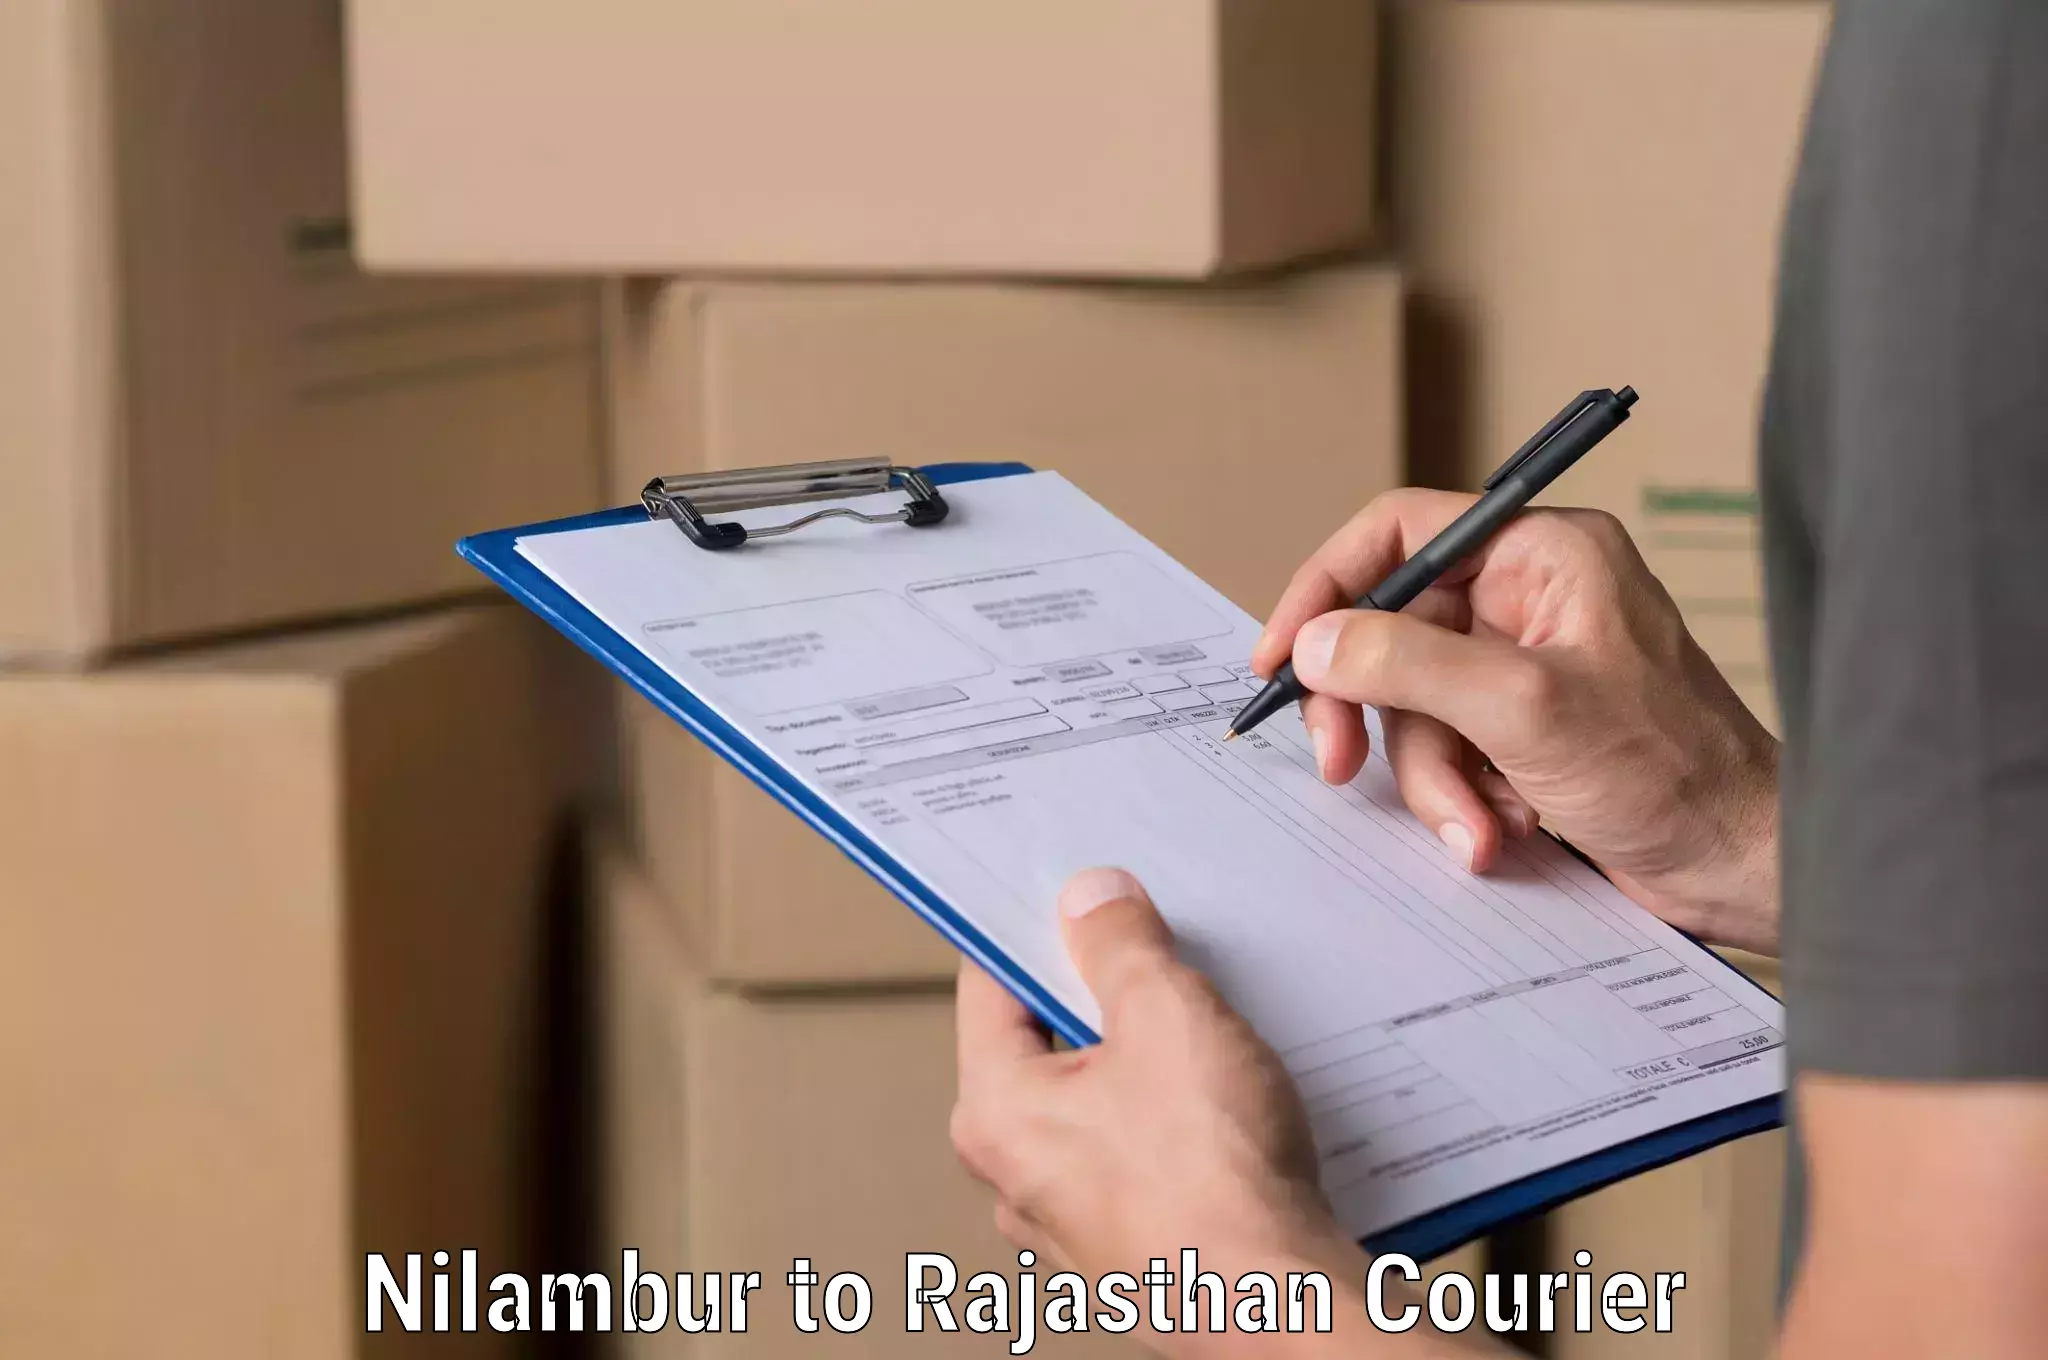 High-priority parcel service Nilambur to Bari Dholpur